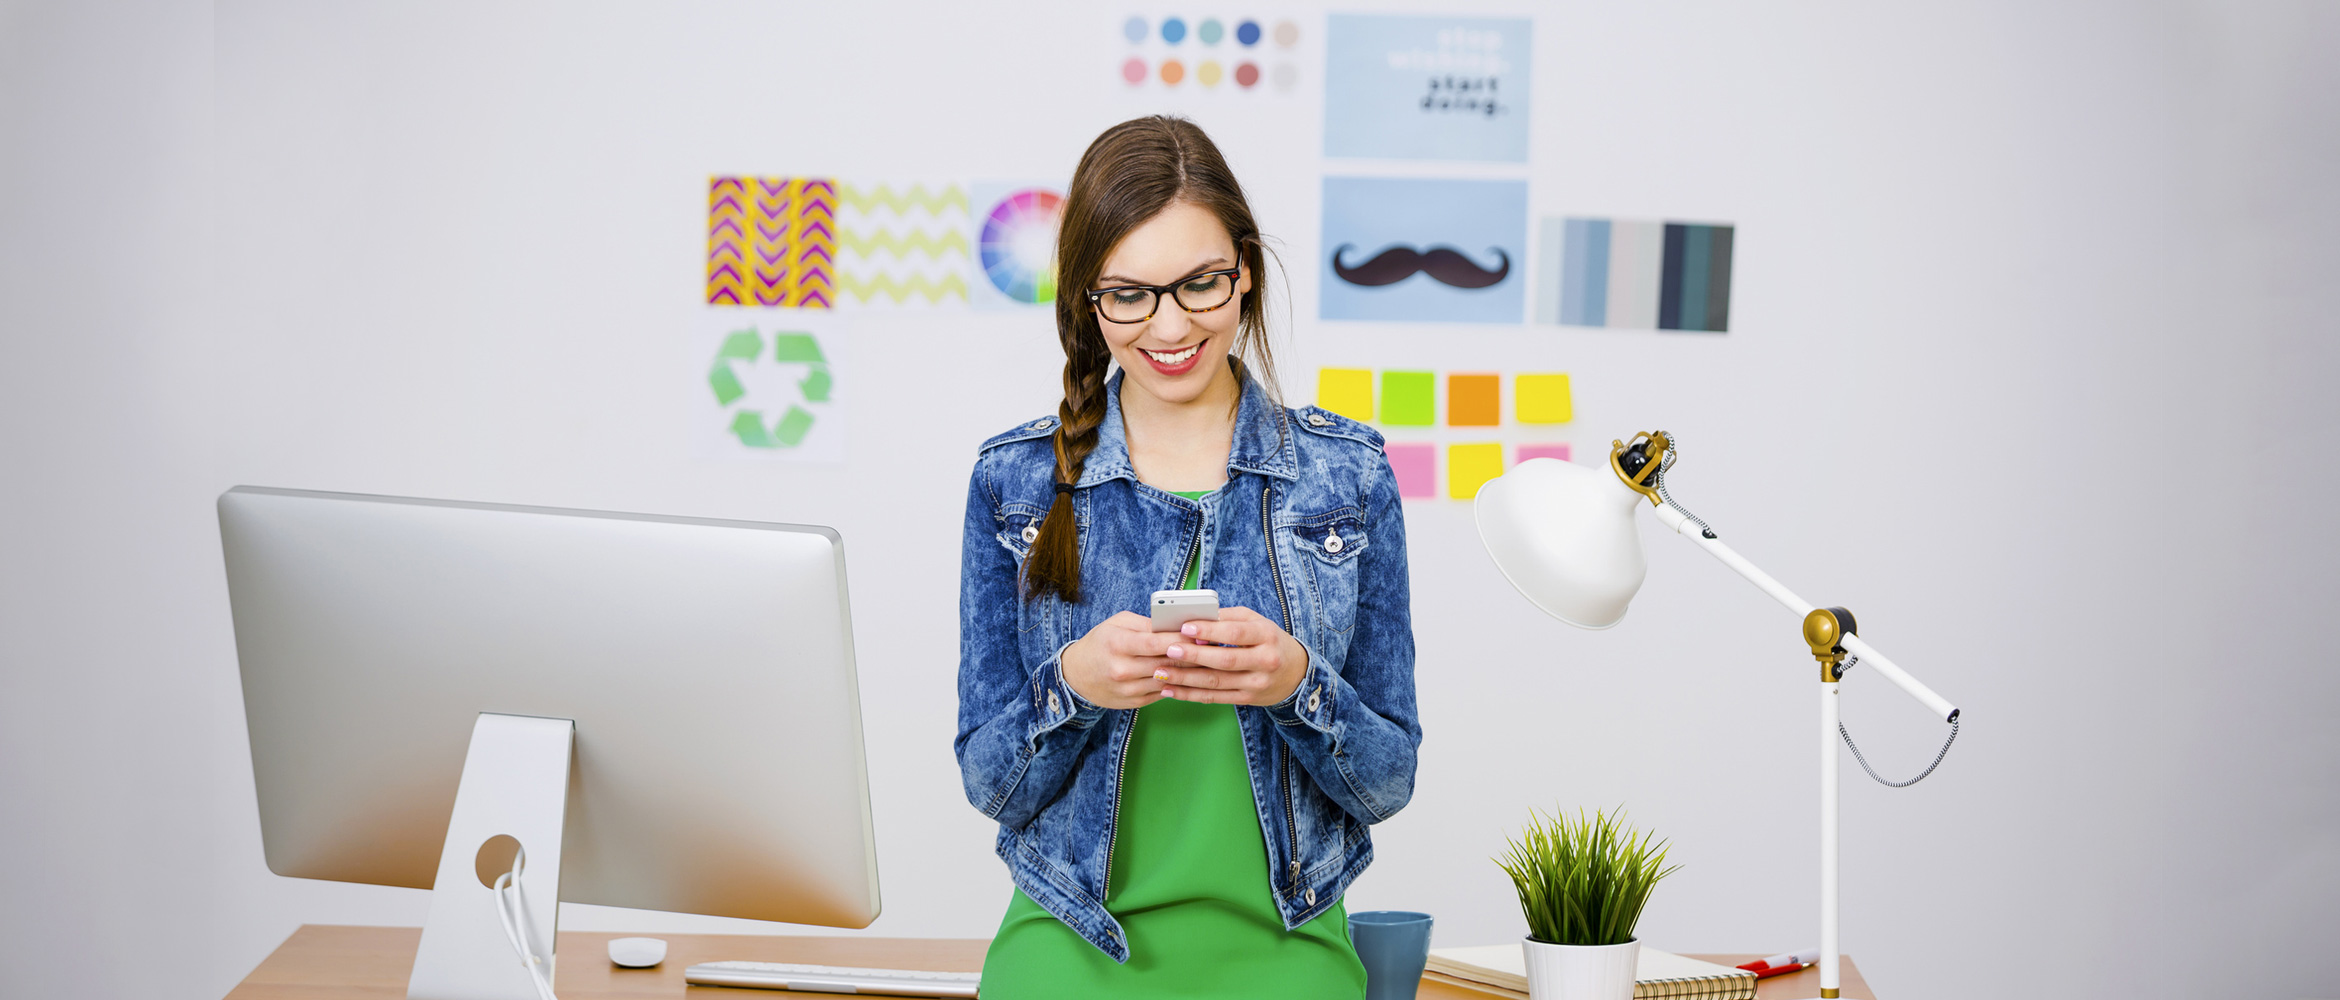 Eine junge Frau mit Brille und einem lächelnden Gesichtsausdruck steht vor einem Schreibtisch mit einem iMac, einer weißen Schreibtischlampe und diversen Büroutensilien. Sie trägt ein grünes Top und eine blaue Jeansjacke und hält ein Smartphone in ihren Händen. Im Hintergrund sind bunte Wanddekorationen und Notizzettel zu sehen.